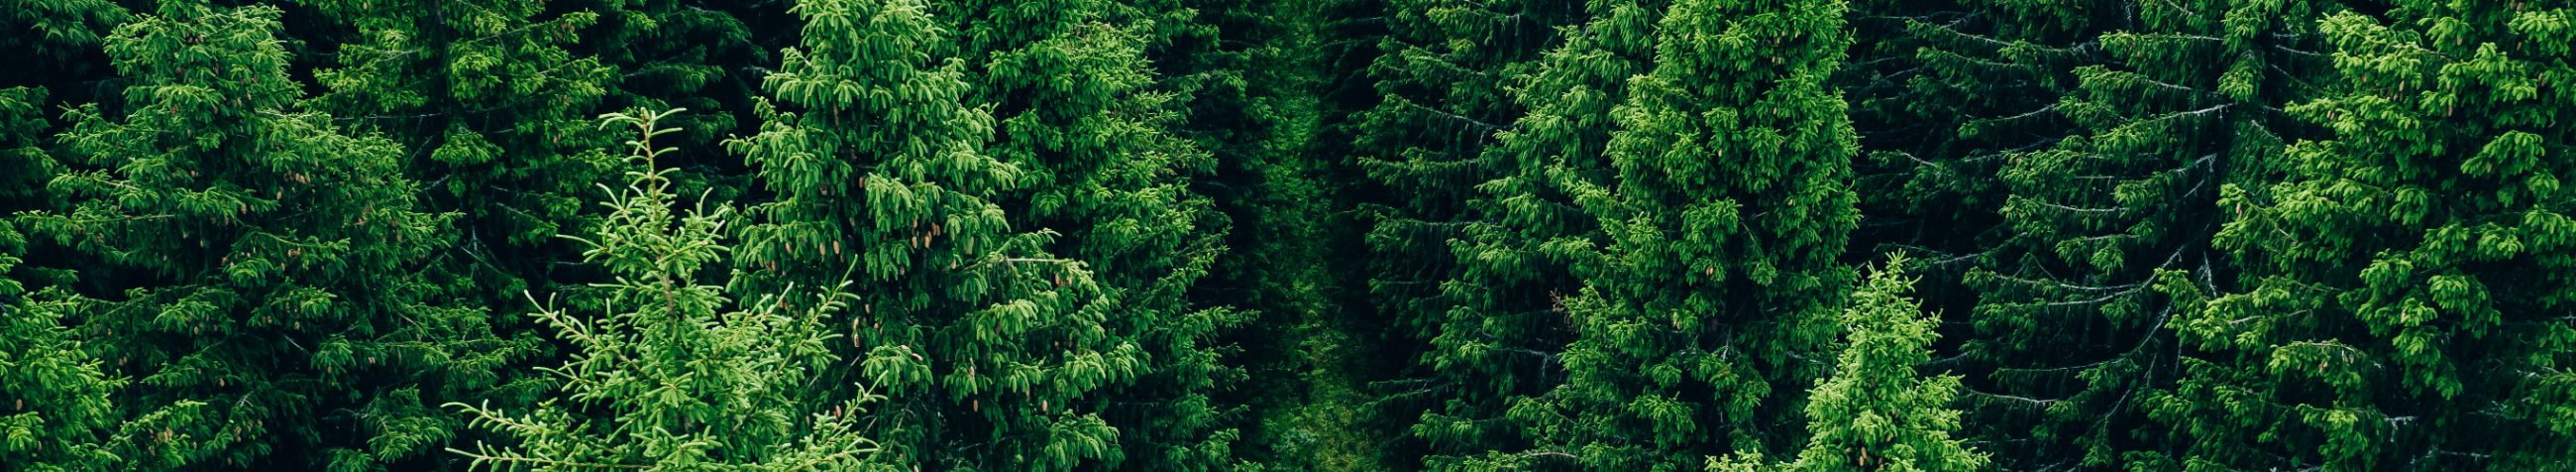 Muhusalu OÜ pakub professionaalseid metsaraieteenuseid, metsa ülestöötamiseks ja metsamajanduse teenuseid, et taastada ja säilitada loodusliku ilu.